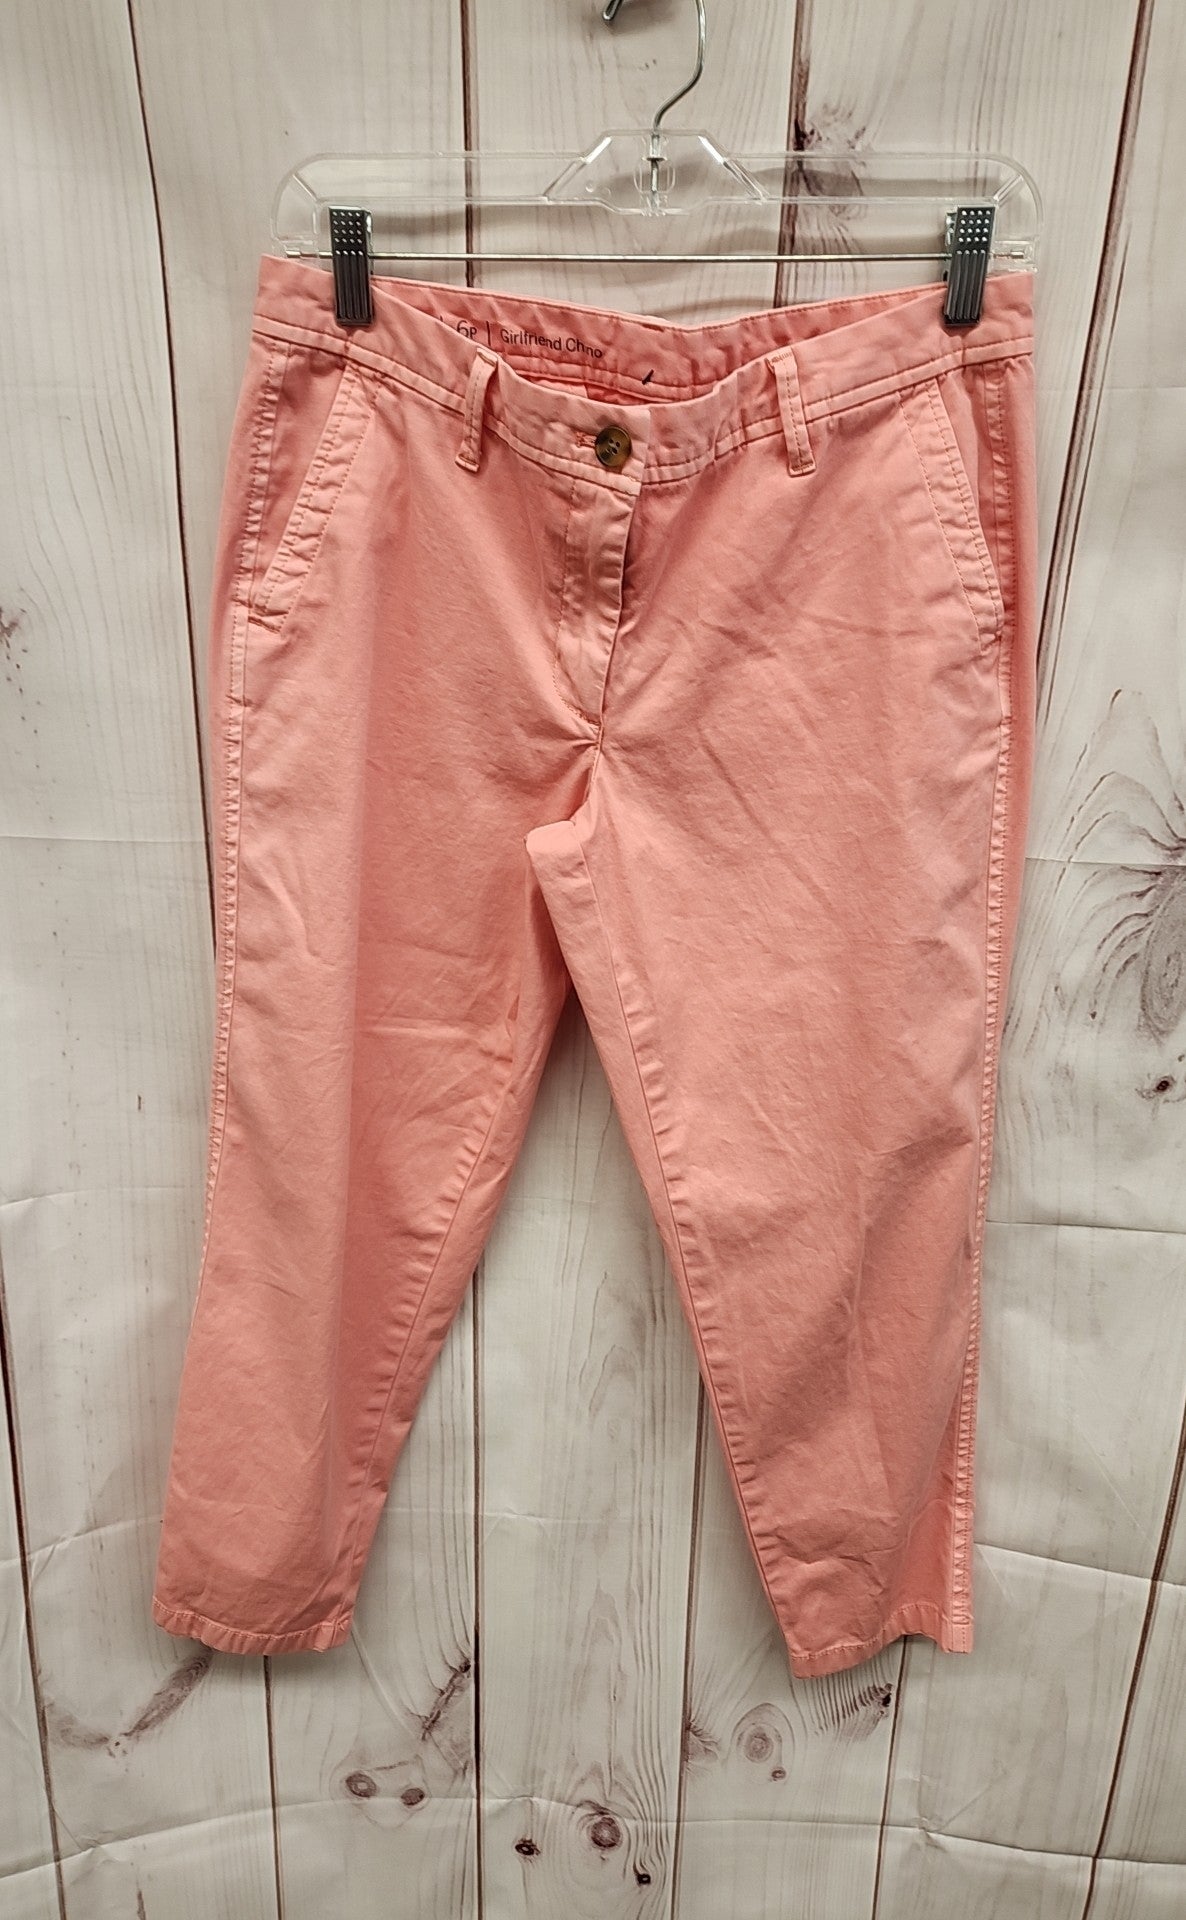 Talbots Women's Size 6 Petite Girlfriend Chino Pink Pants